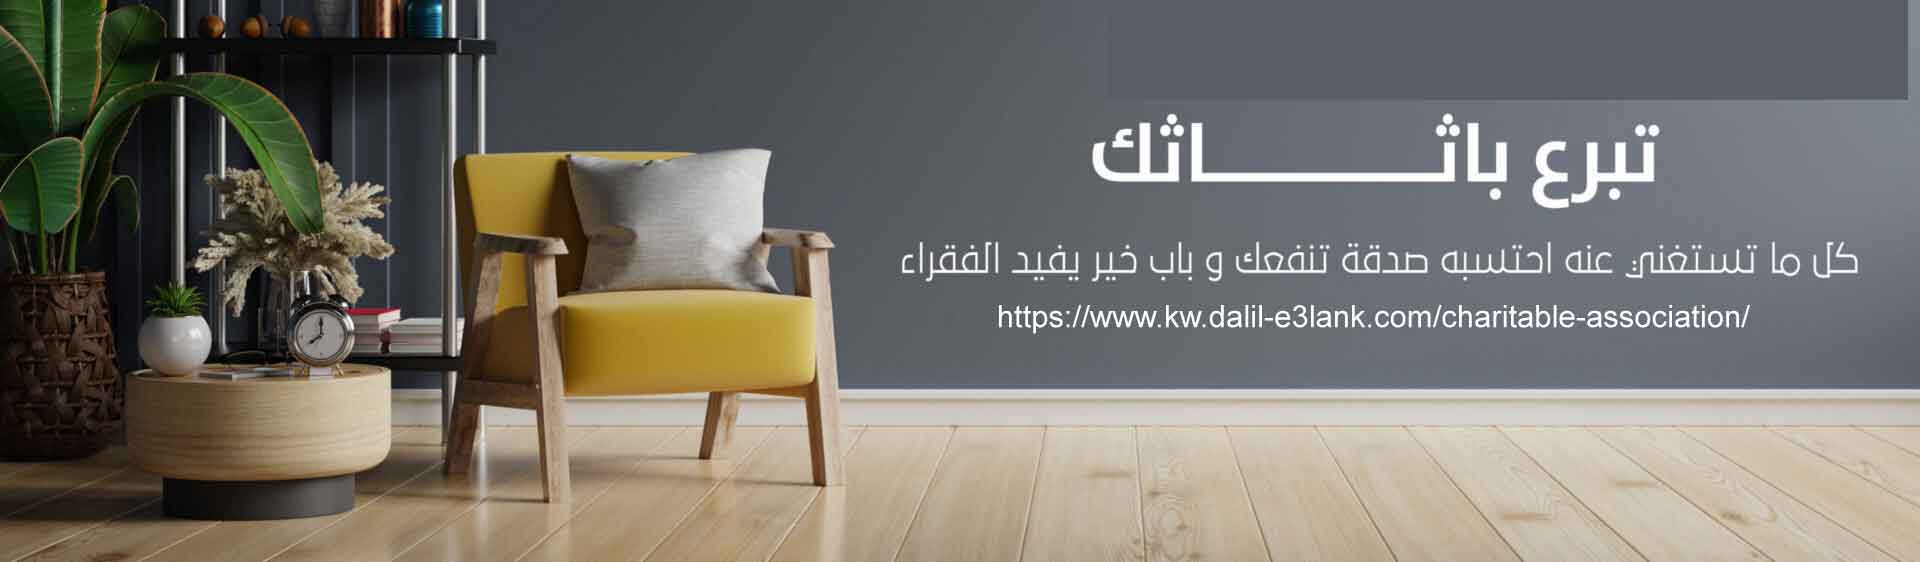 جمعية تبرع اثاث مستعمل في الكويت